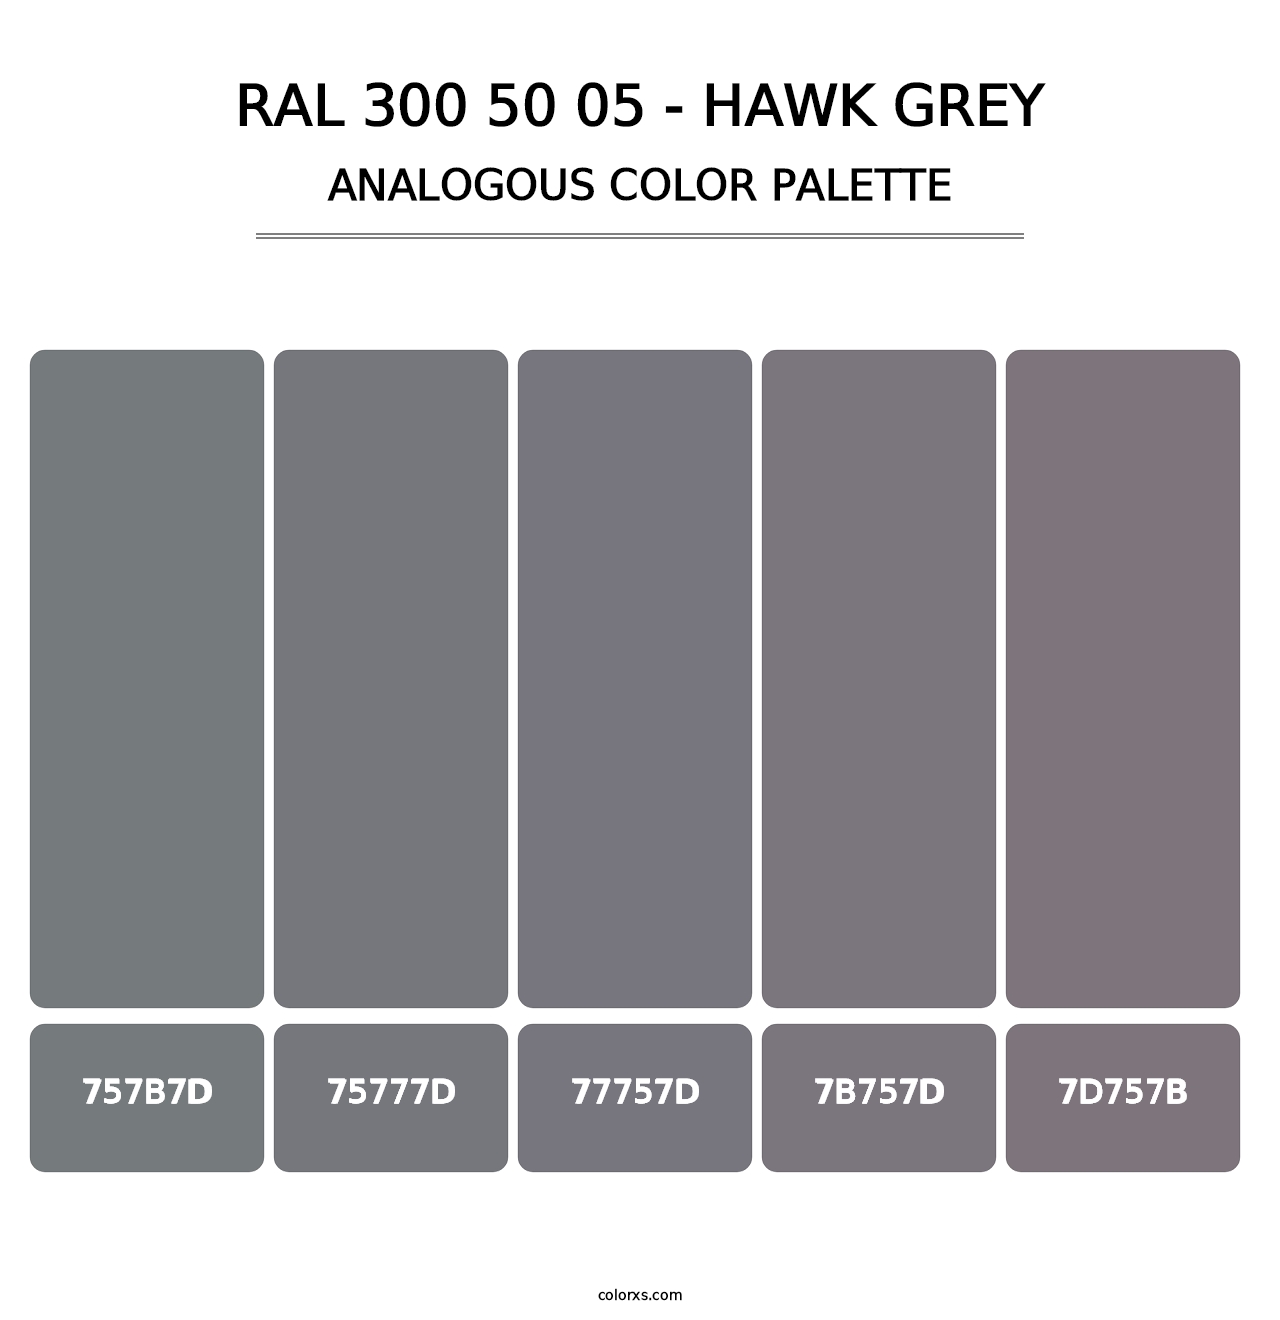 RAL 300 50 05 - Hawk Grey - Analogous Color Palette